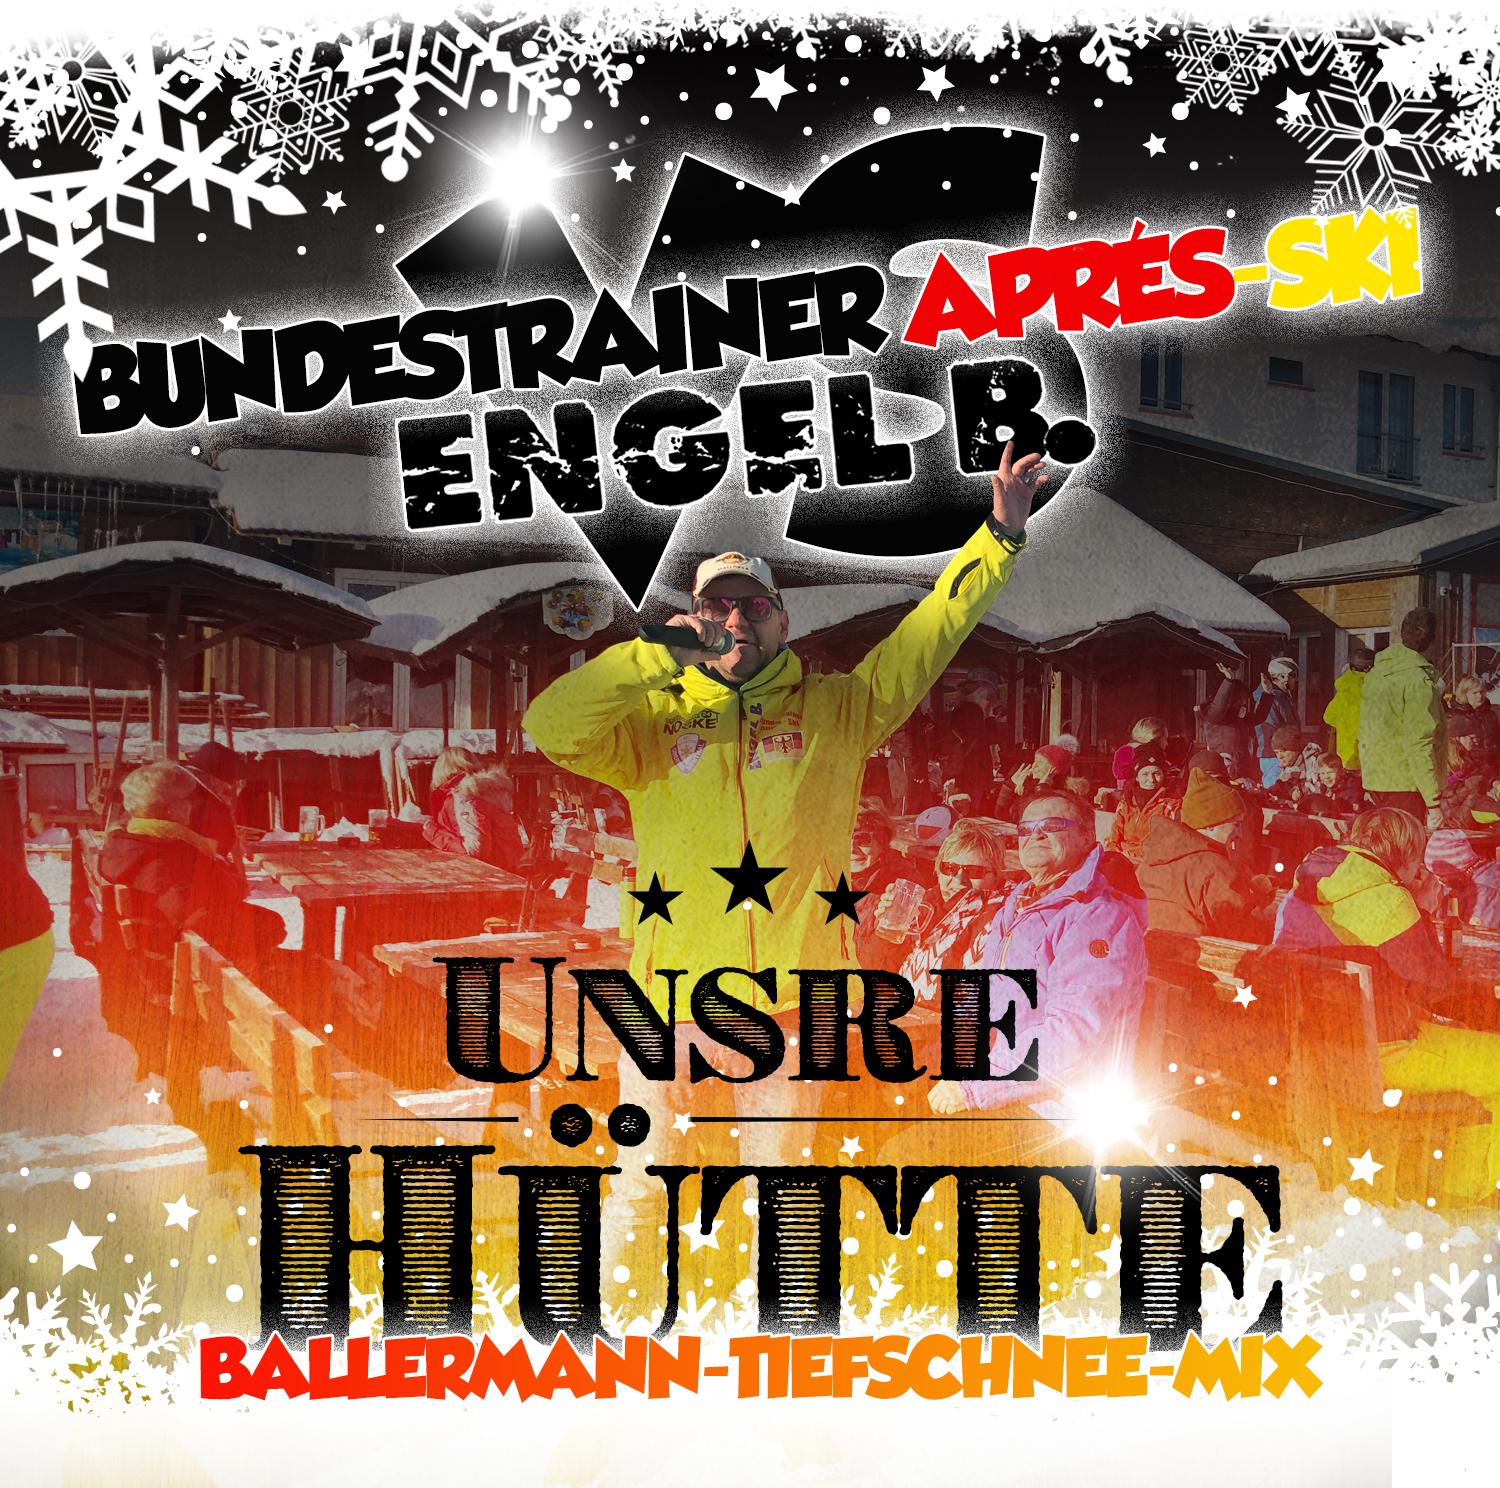 Bundestrainer Apresski vs. Engel B. – Unsre Hütte (Ballermann® Tiefschnee Mix )